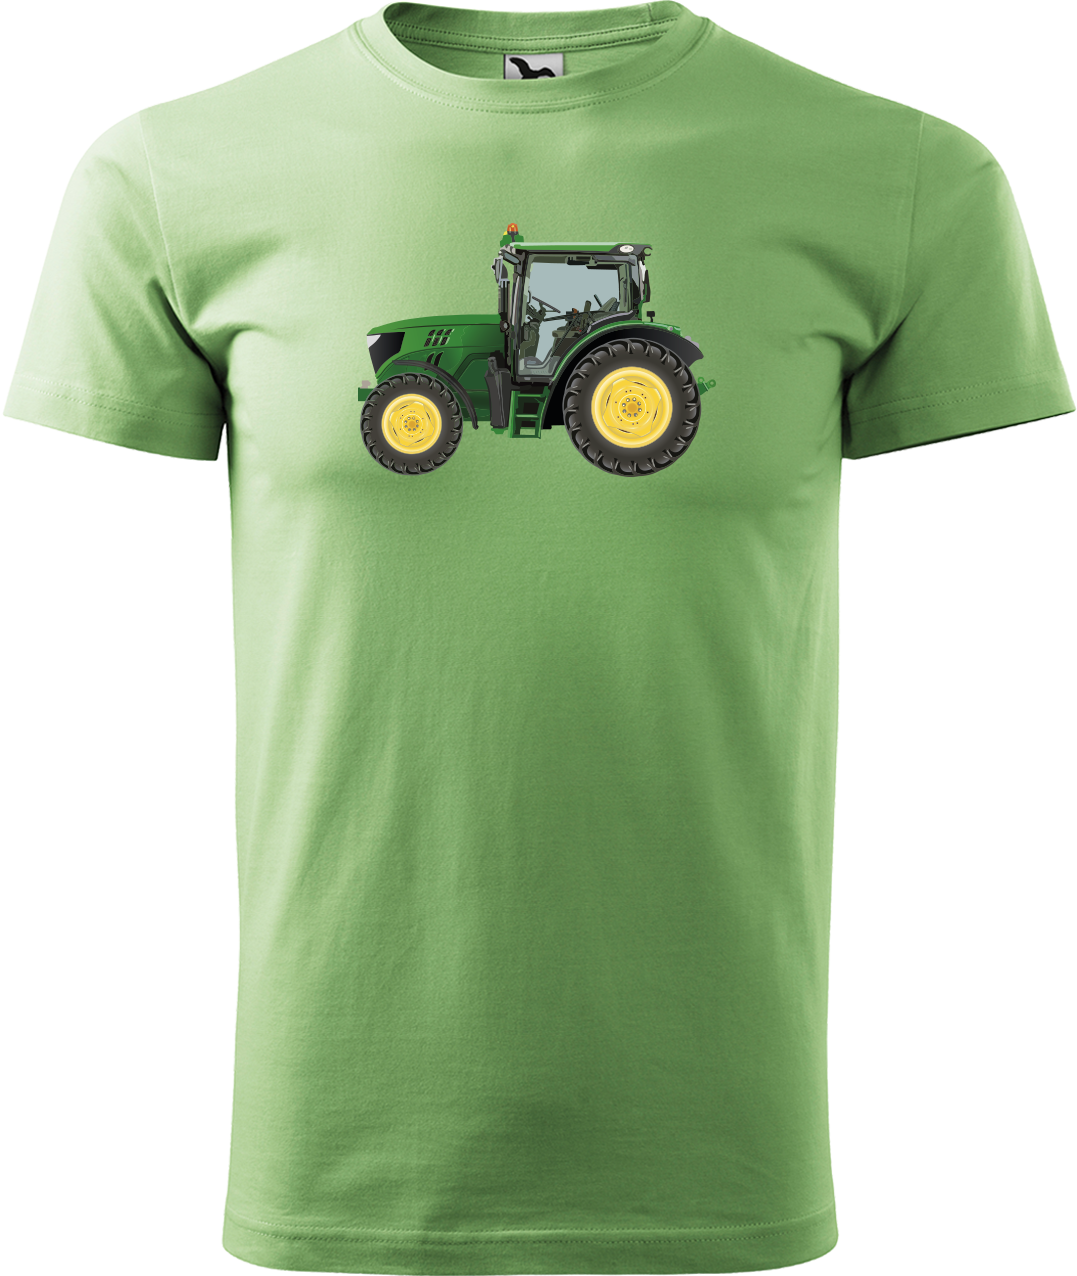 Tričko s traktorem - Zelený traktor Velikost: 4XL, Barva: Trávově zelená (39)